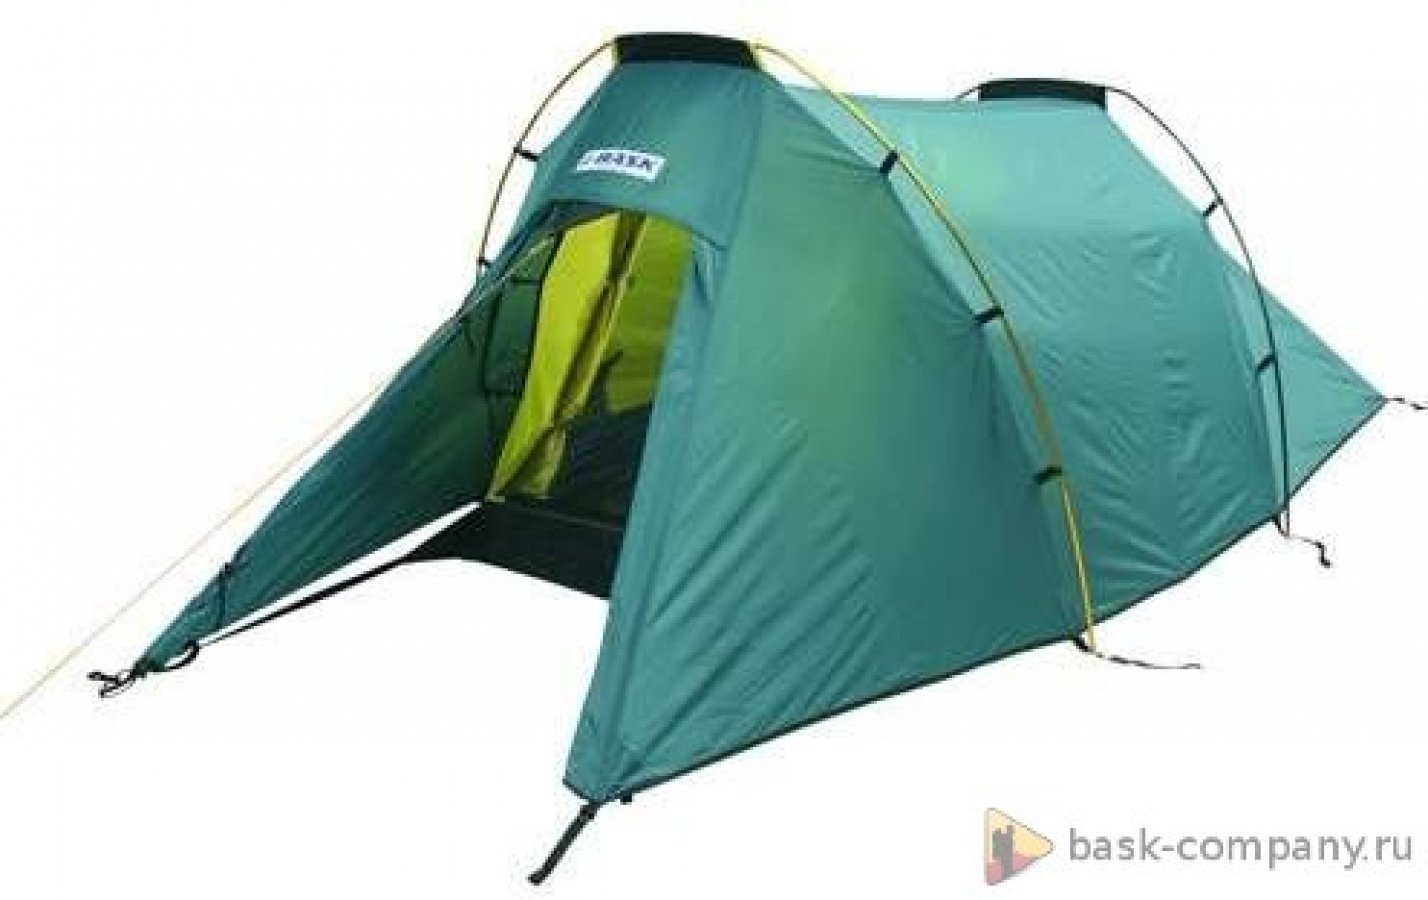 Купить палатку 2х. Палатка Баск 2 местная. Палатка Bask Passat 2. Палатка Atemi Ladoga 4. Палатка полубочка 2 местная 2 v 2.